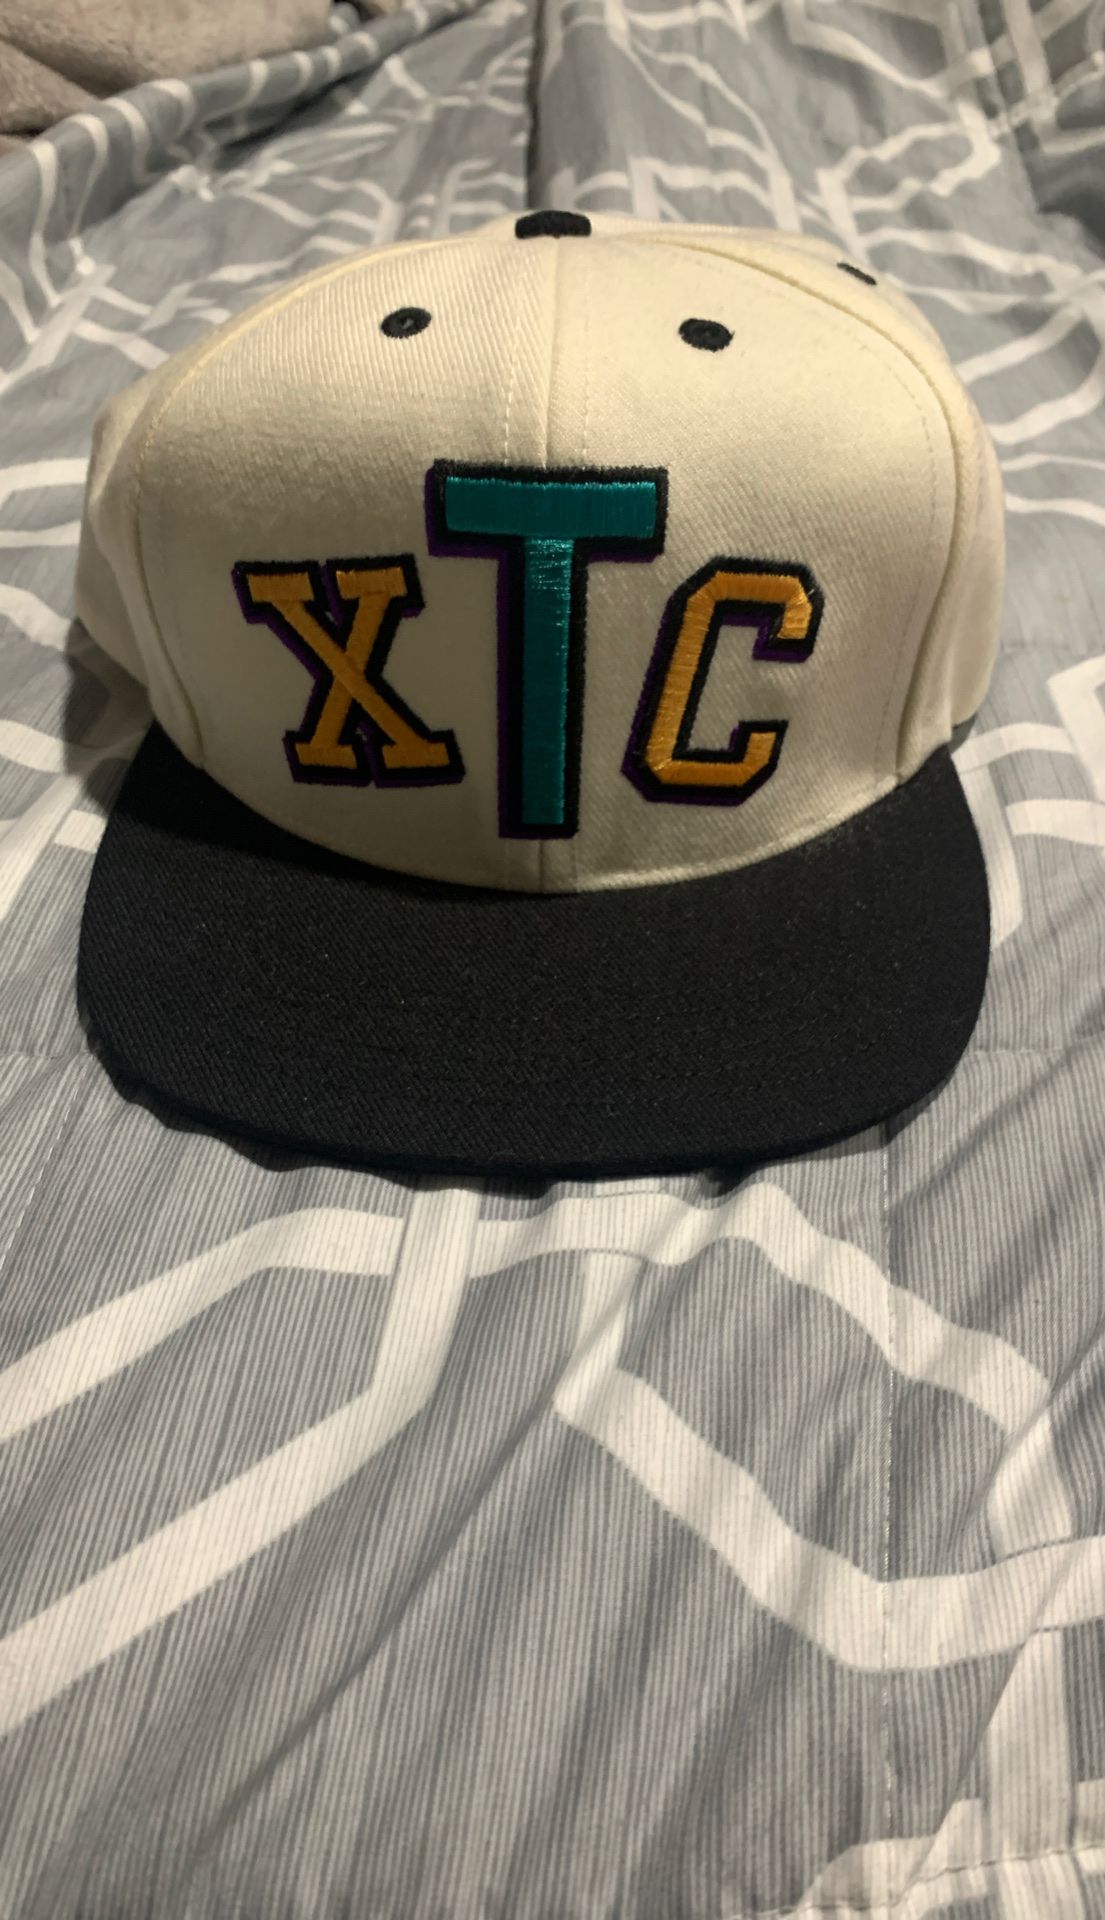 Supreme XTC hat